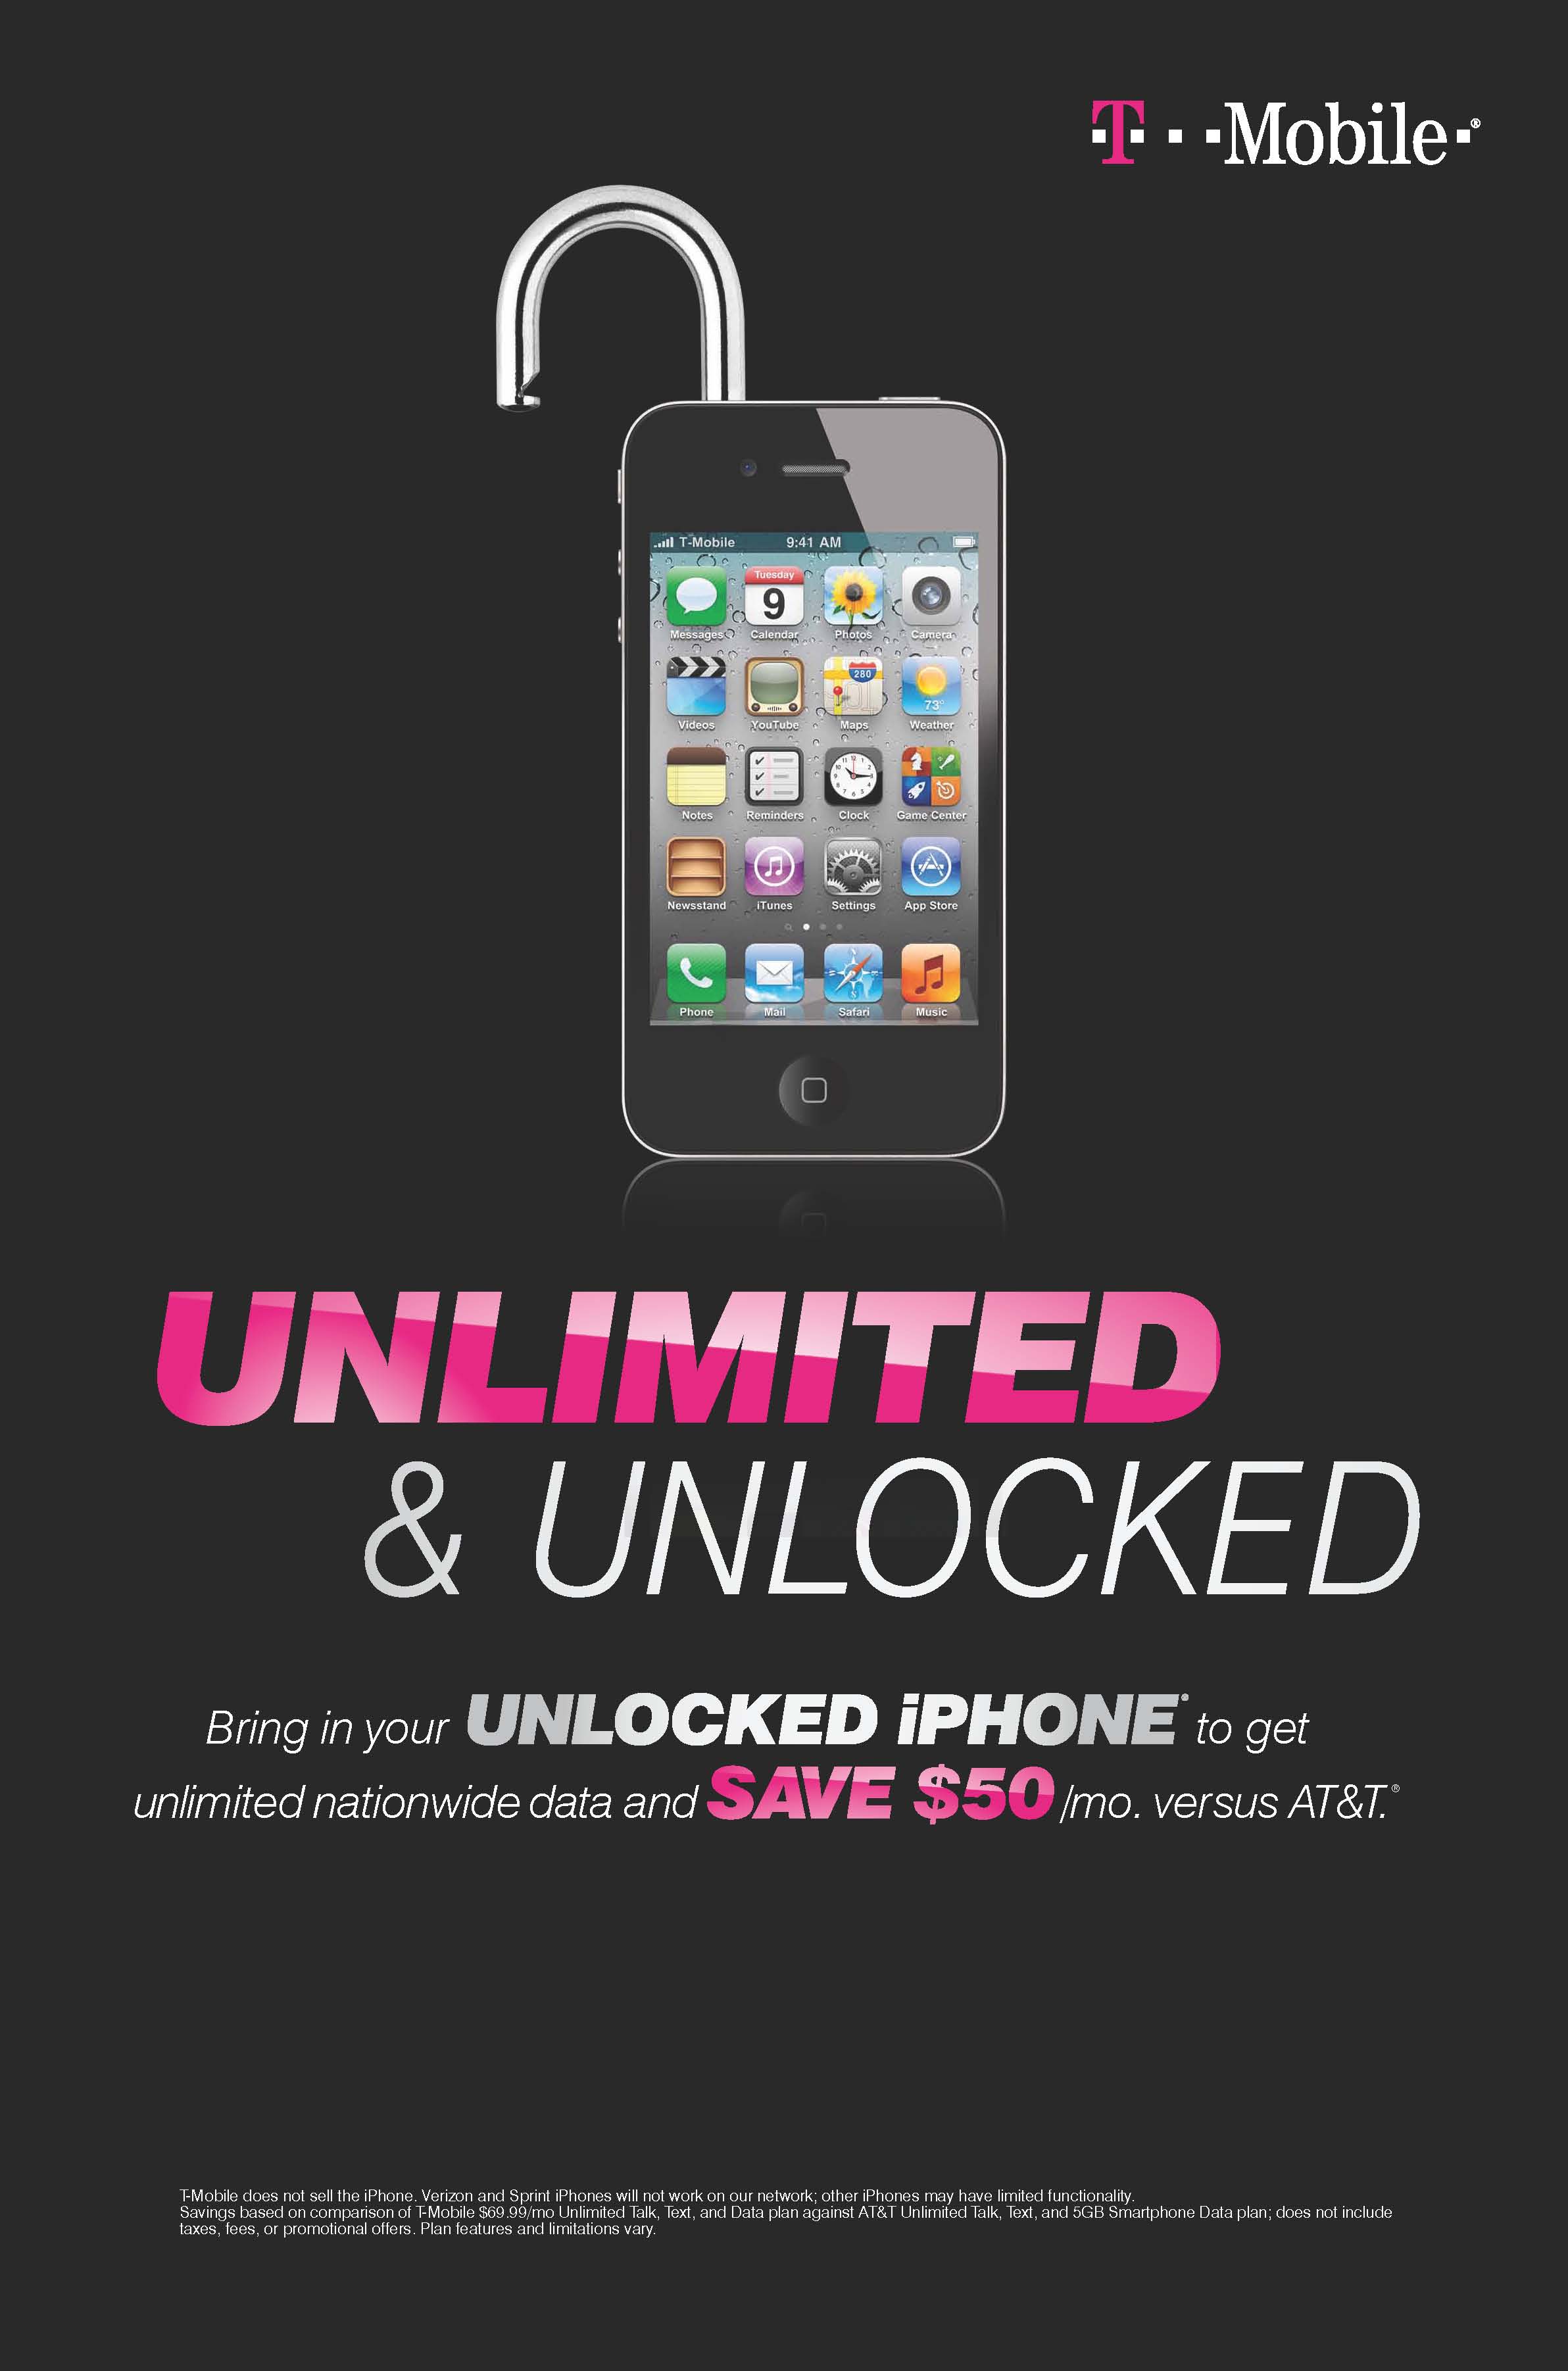 Promoção da T-Mobile para donos de iPhones